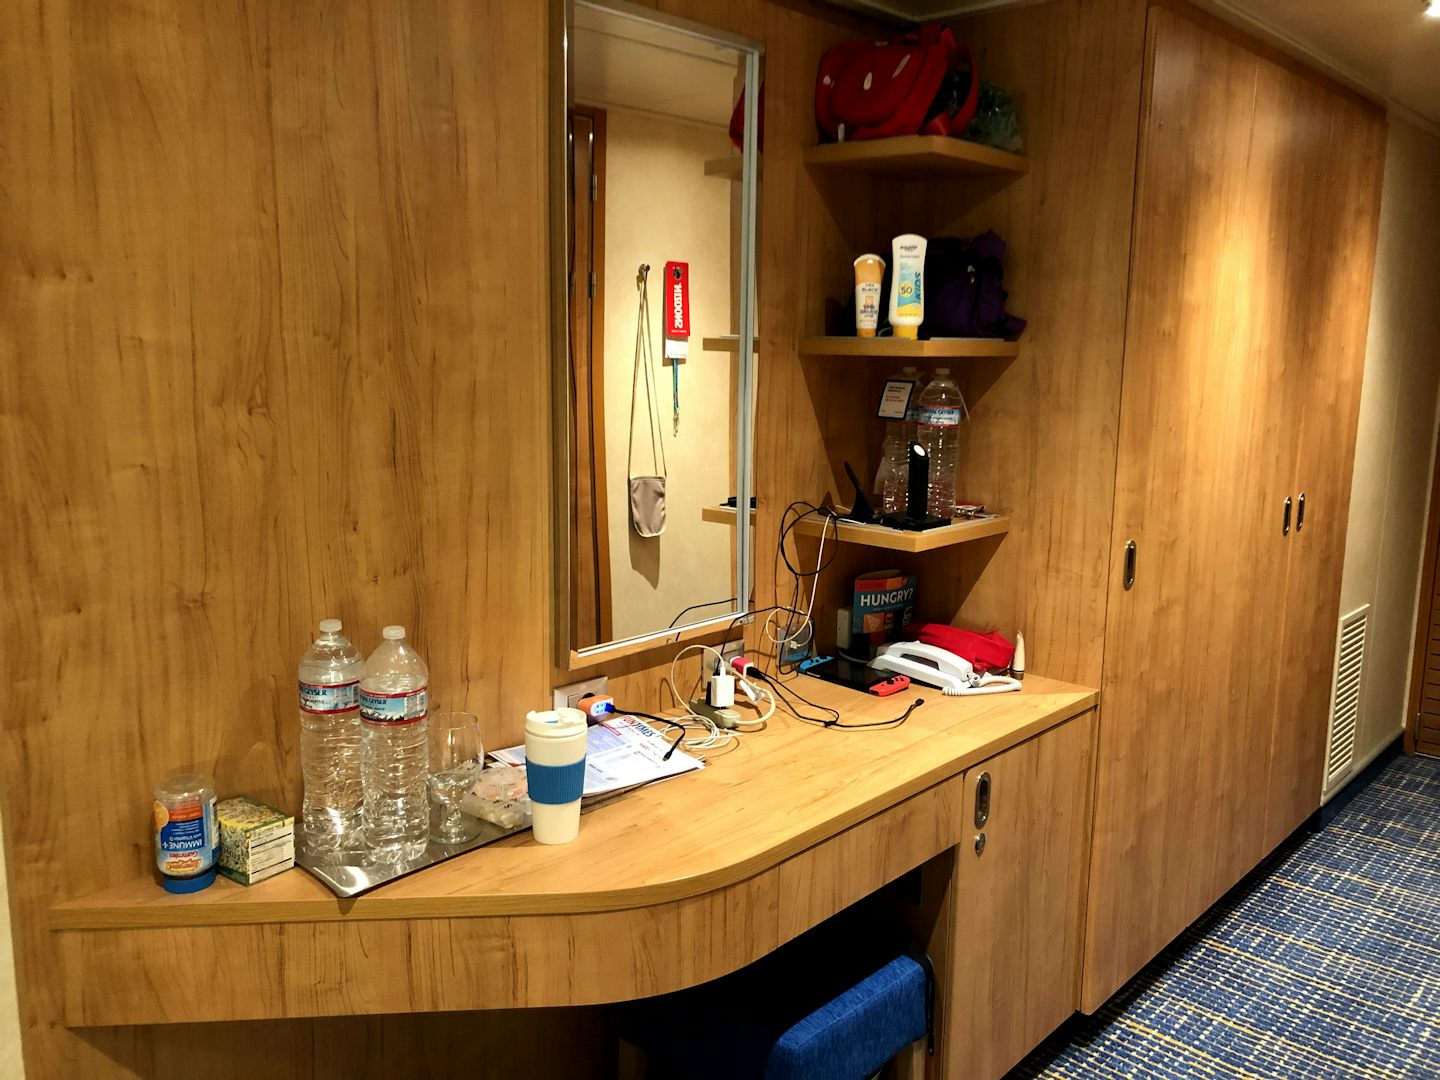 Desk/vanity, mini fridge beneath it, and closet space next to it. 